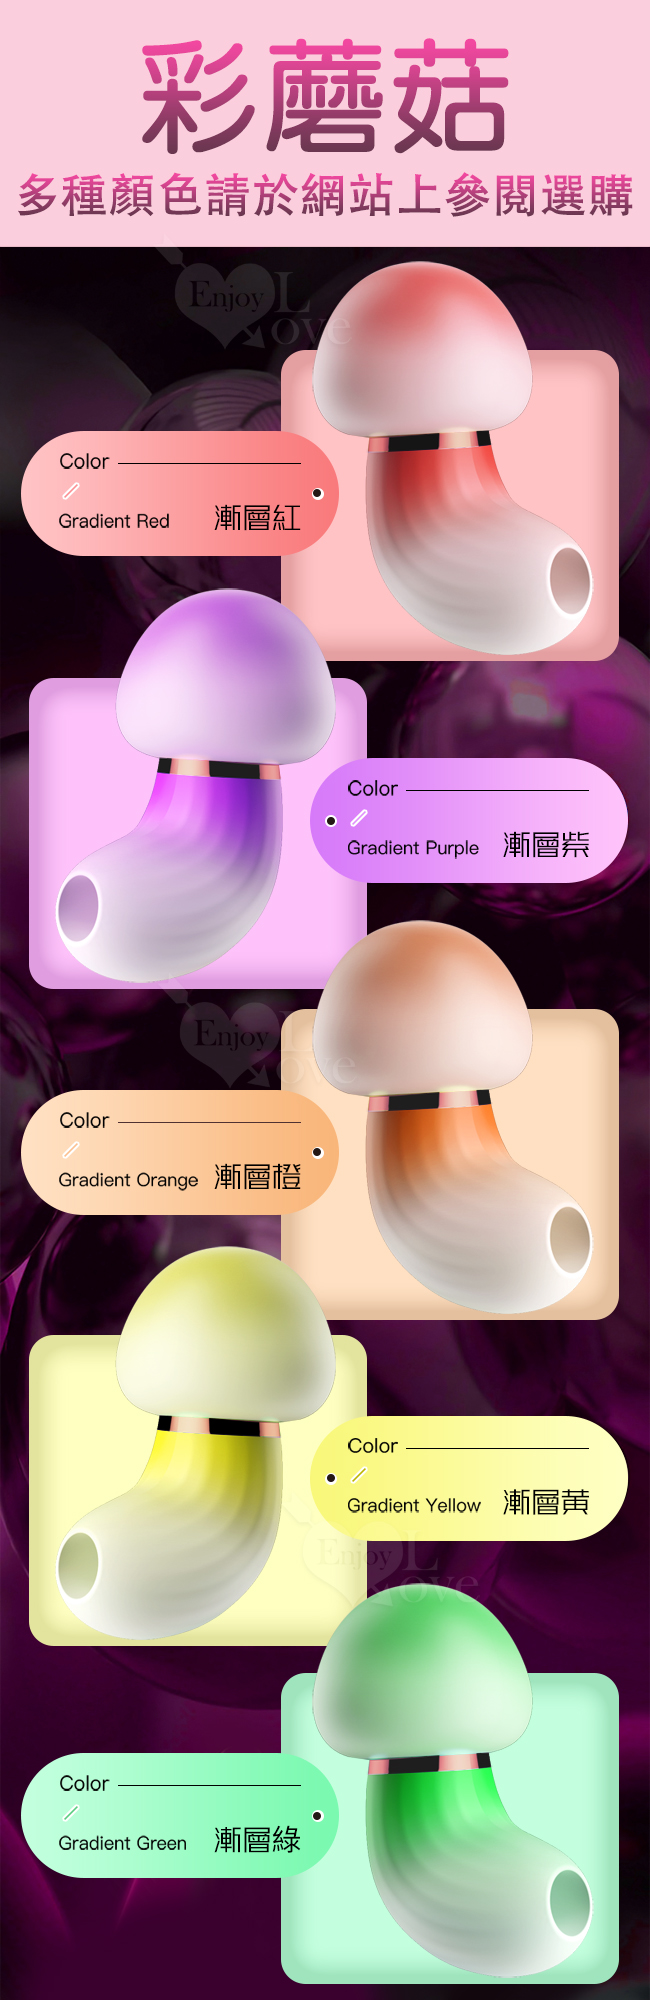 彩蘑菇．潮流萌物控 陰乳集束刺激震動器﹝10段高頻震擊+舒適硅膠握感+USB充電﹞ - 漸層紫